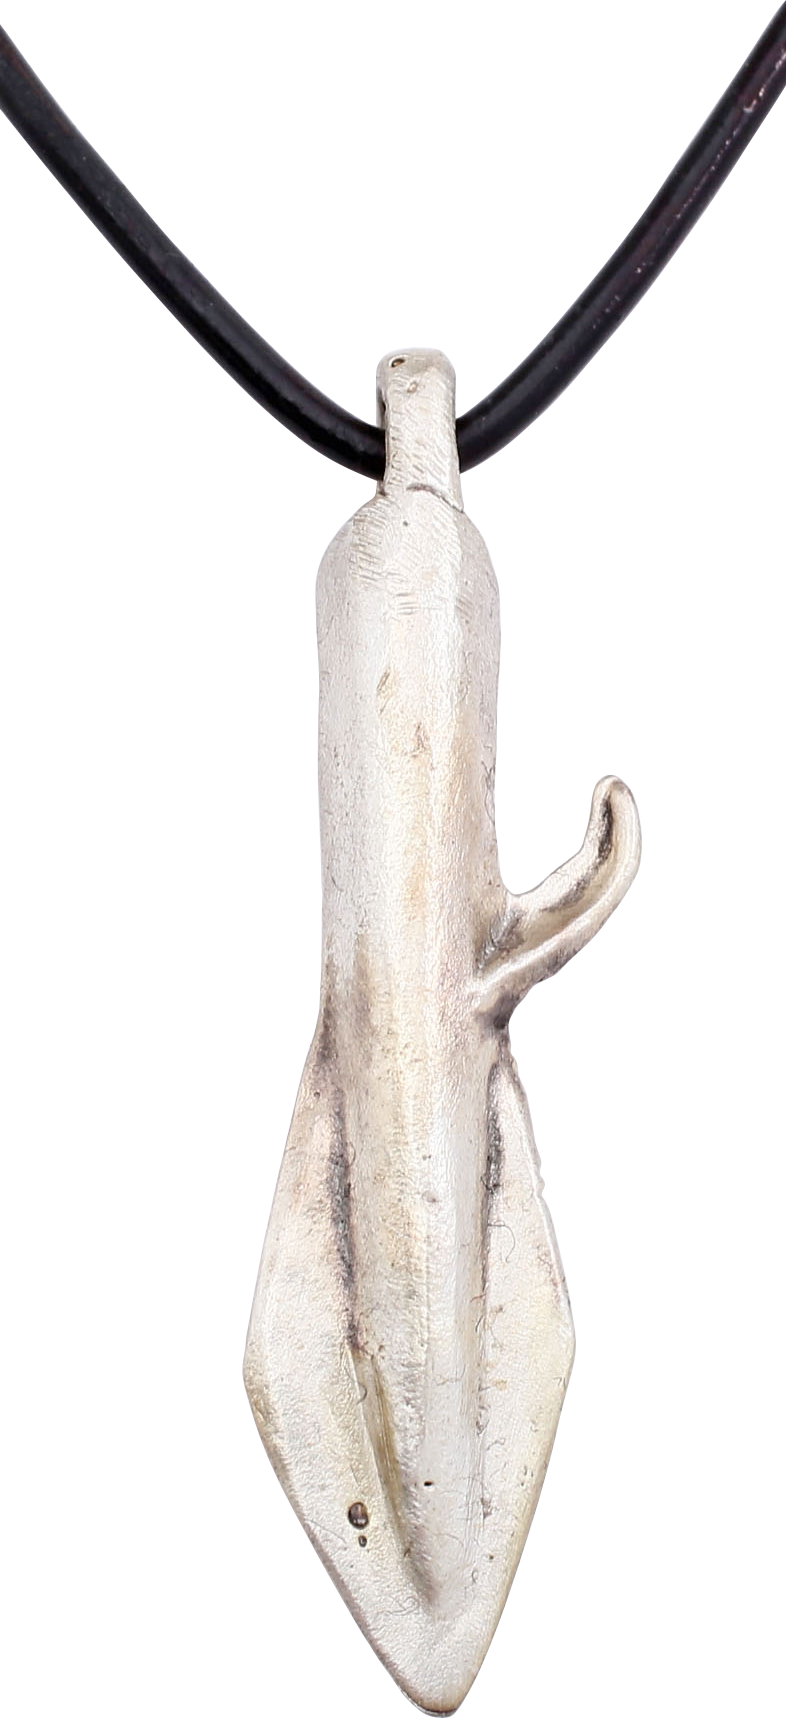 EASTERN EUROPEAN ARROWHEAD PENDANT NECKLACE, 700-200 BC - Fagan Arms (8202588356782)